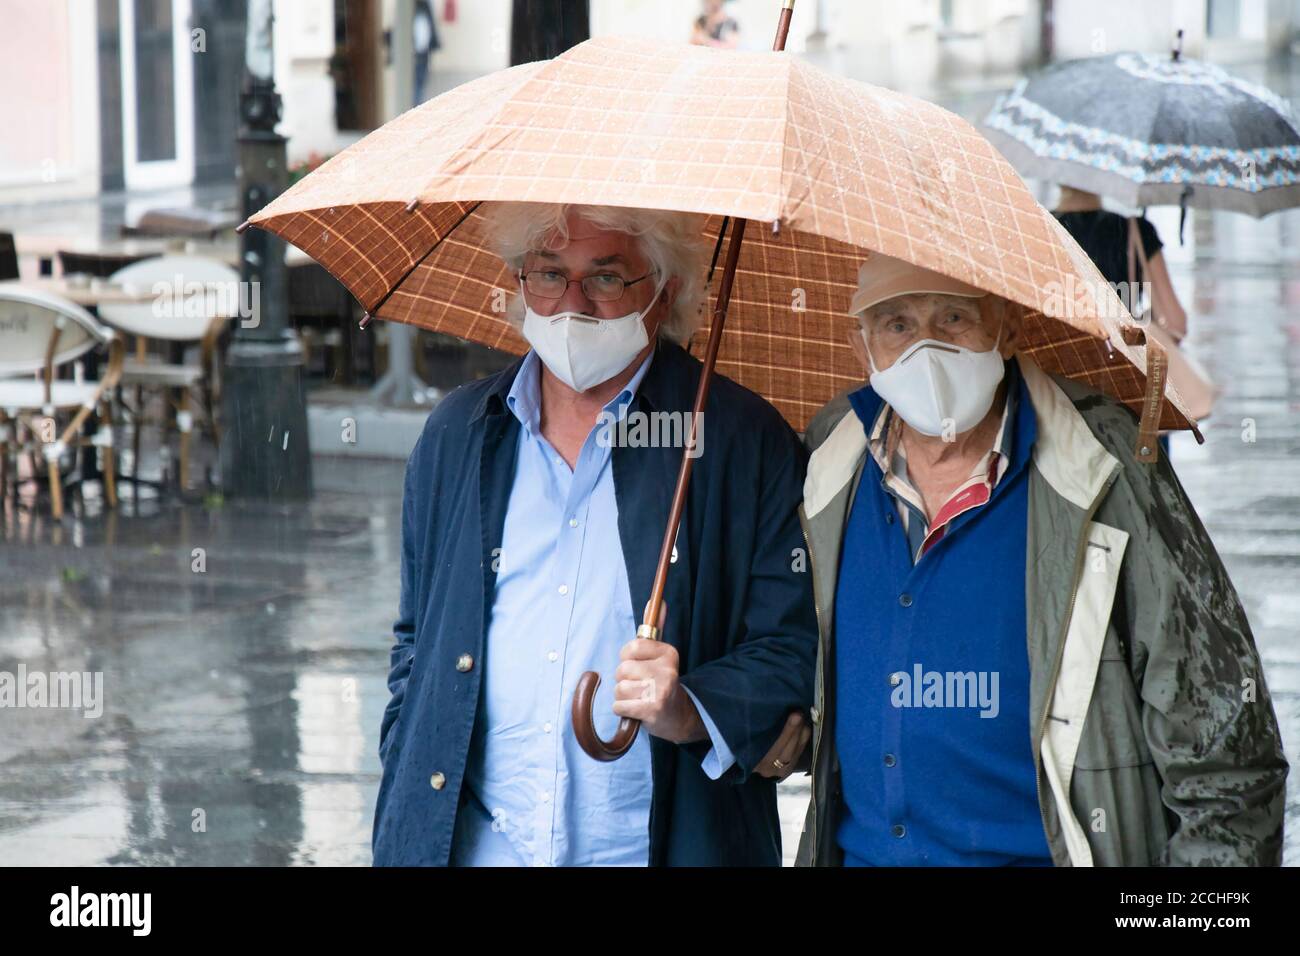 Belgrado, Serbia - 5 agosto 2020: Uomini anziani di due generazioni che indossano una maschera protettiva che camminano sotto l'ombrello in una giornata piovosa nella strada della città Foto Stock